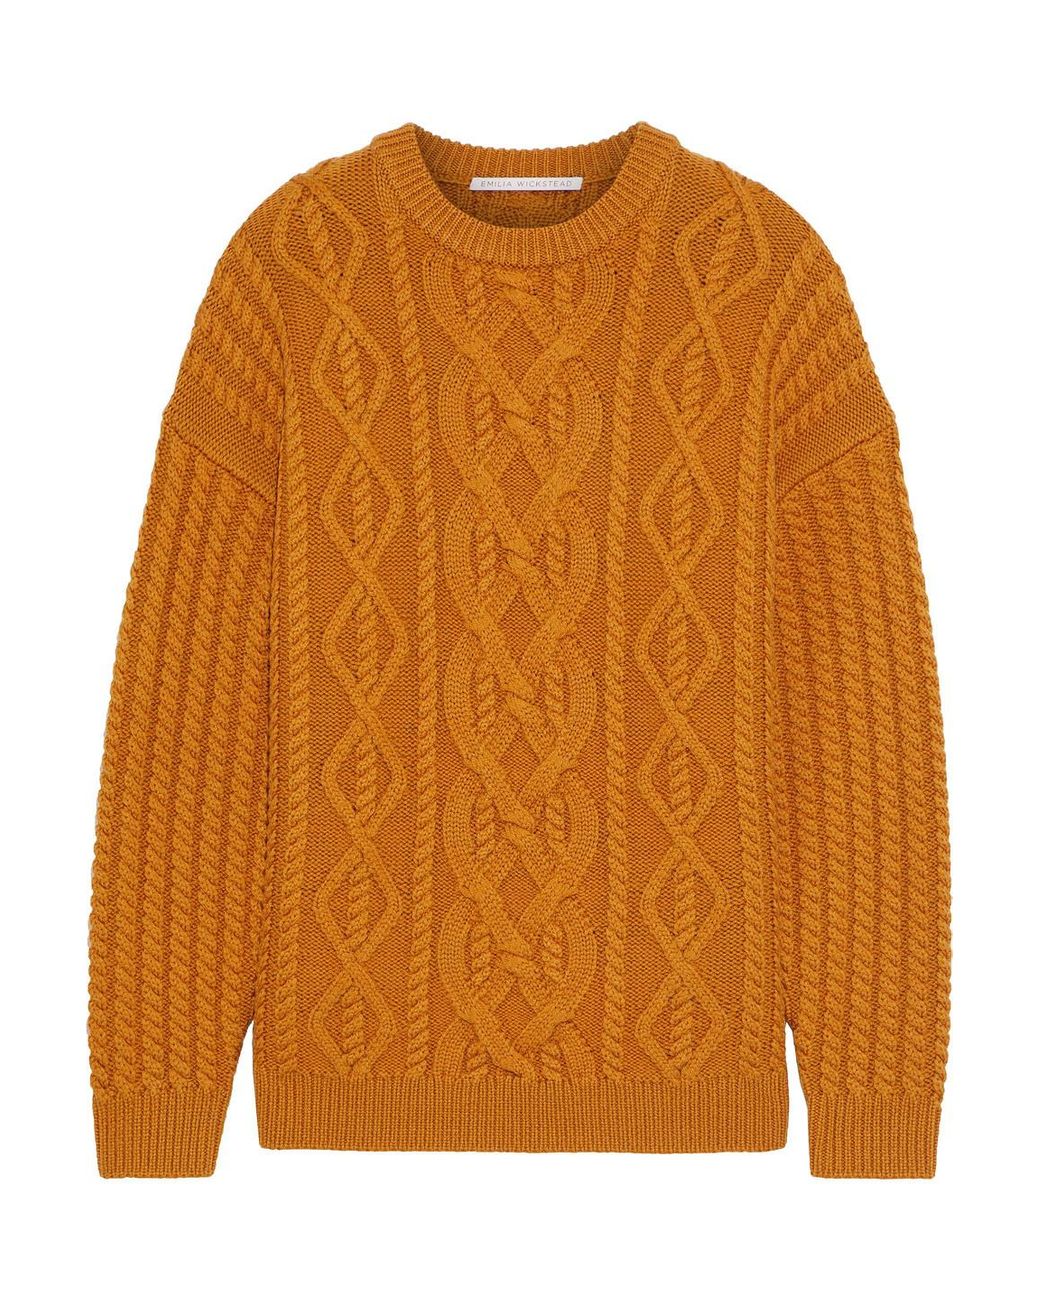 Emilia Wickstead Kobe Cable-knit Wool Sweater in Orange | Lyst